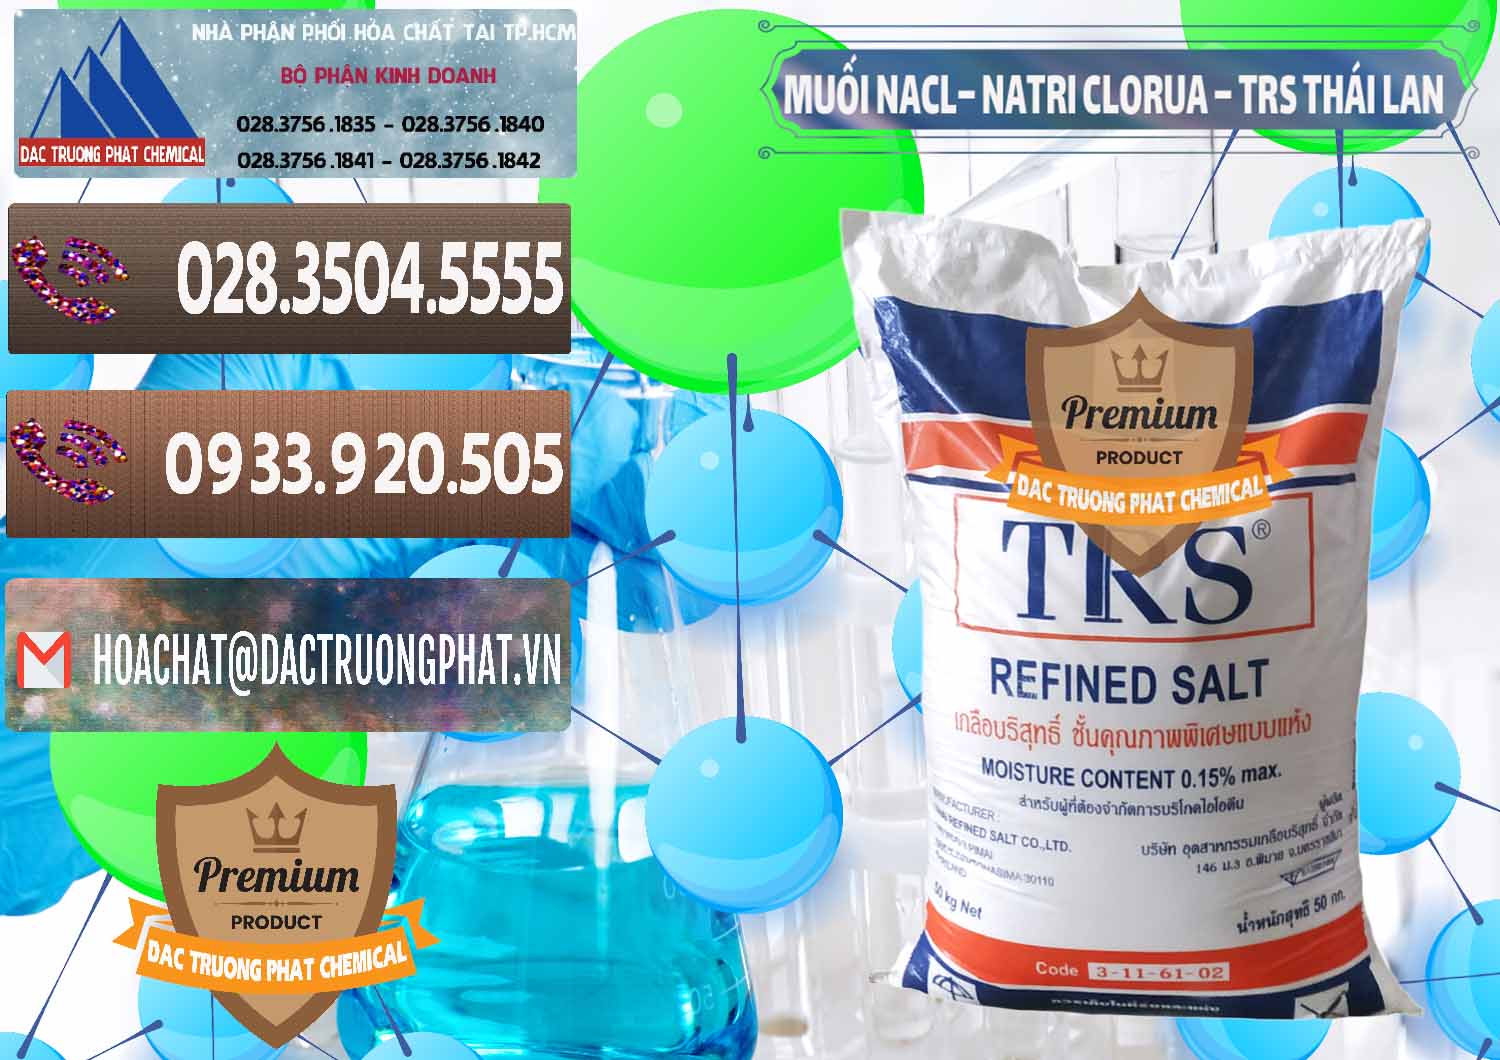 Chuyên cung cấp & bán Muối NaCL – Sodium Chloride TRS Thái Lan - 0096 - Nơi chuyên kinh doanh - phân phối hóa chất tại TP.HCM - hoachatviet.net